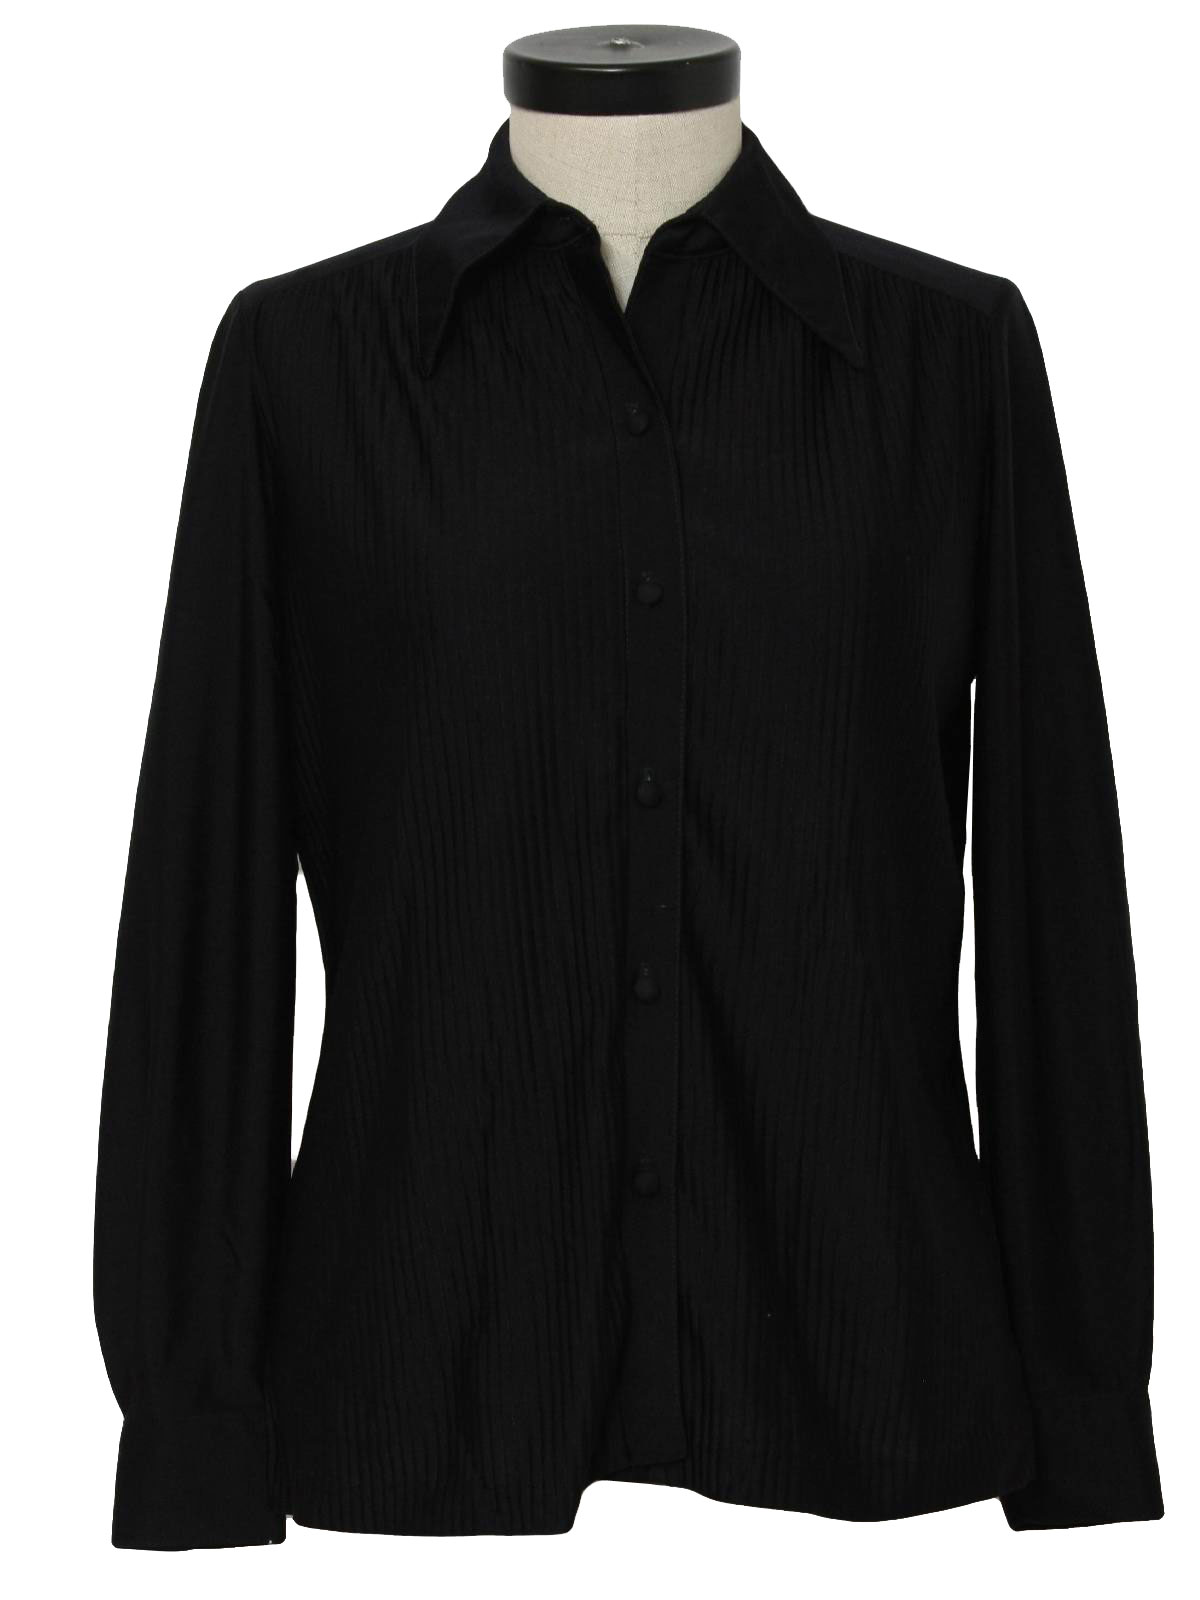 Retro 70s Shirt (Koret) : 70s -Koret- Womens black slinky polyester ...